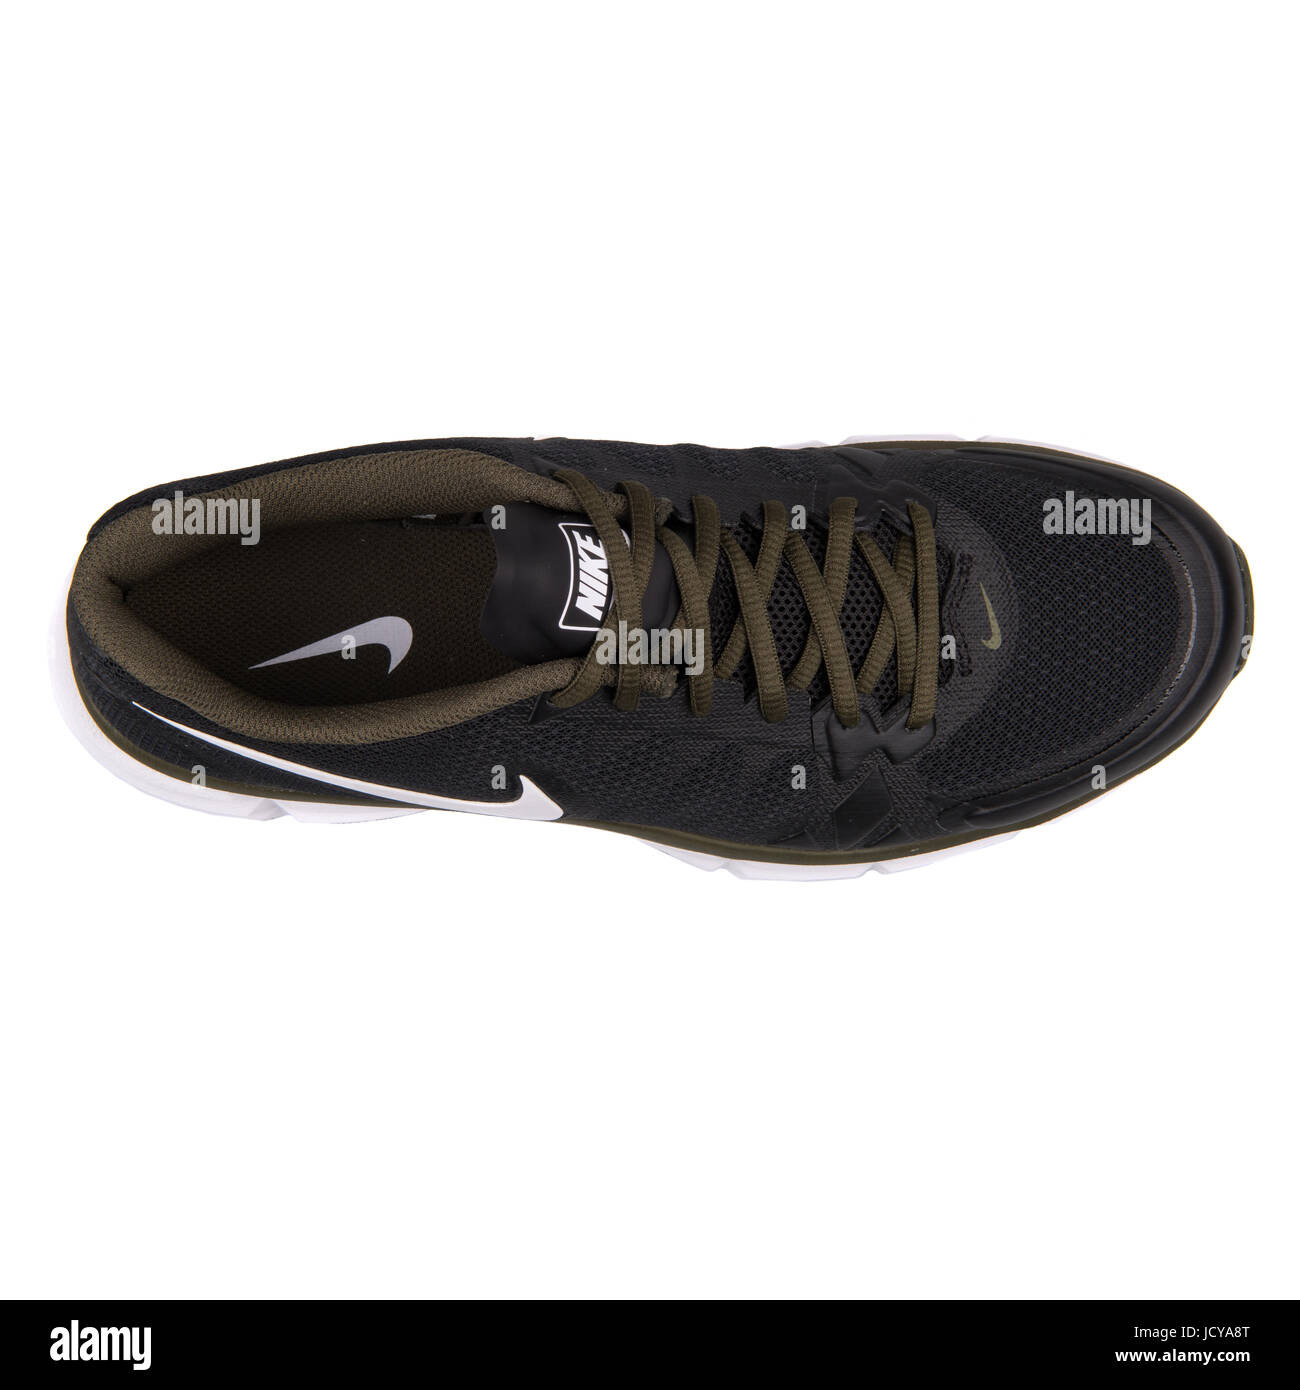 Nike Dual Fusion TR 6 Negro y caqui hombres calzados running - 704889-013 Fotografía stock - Alamy